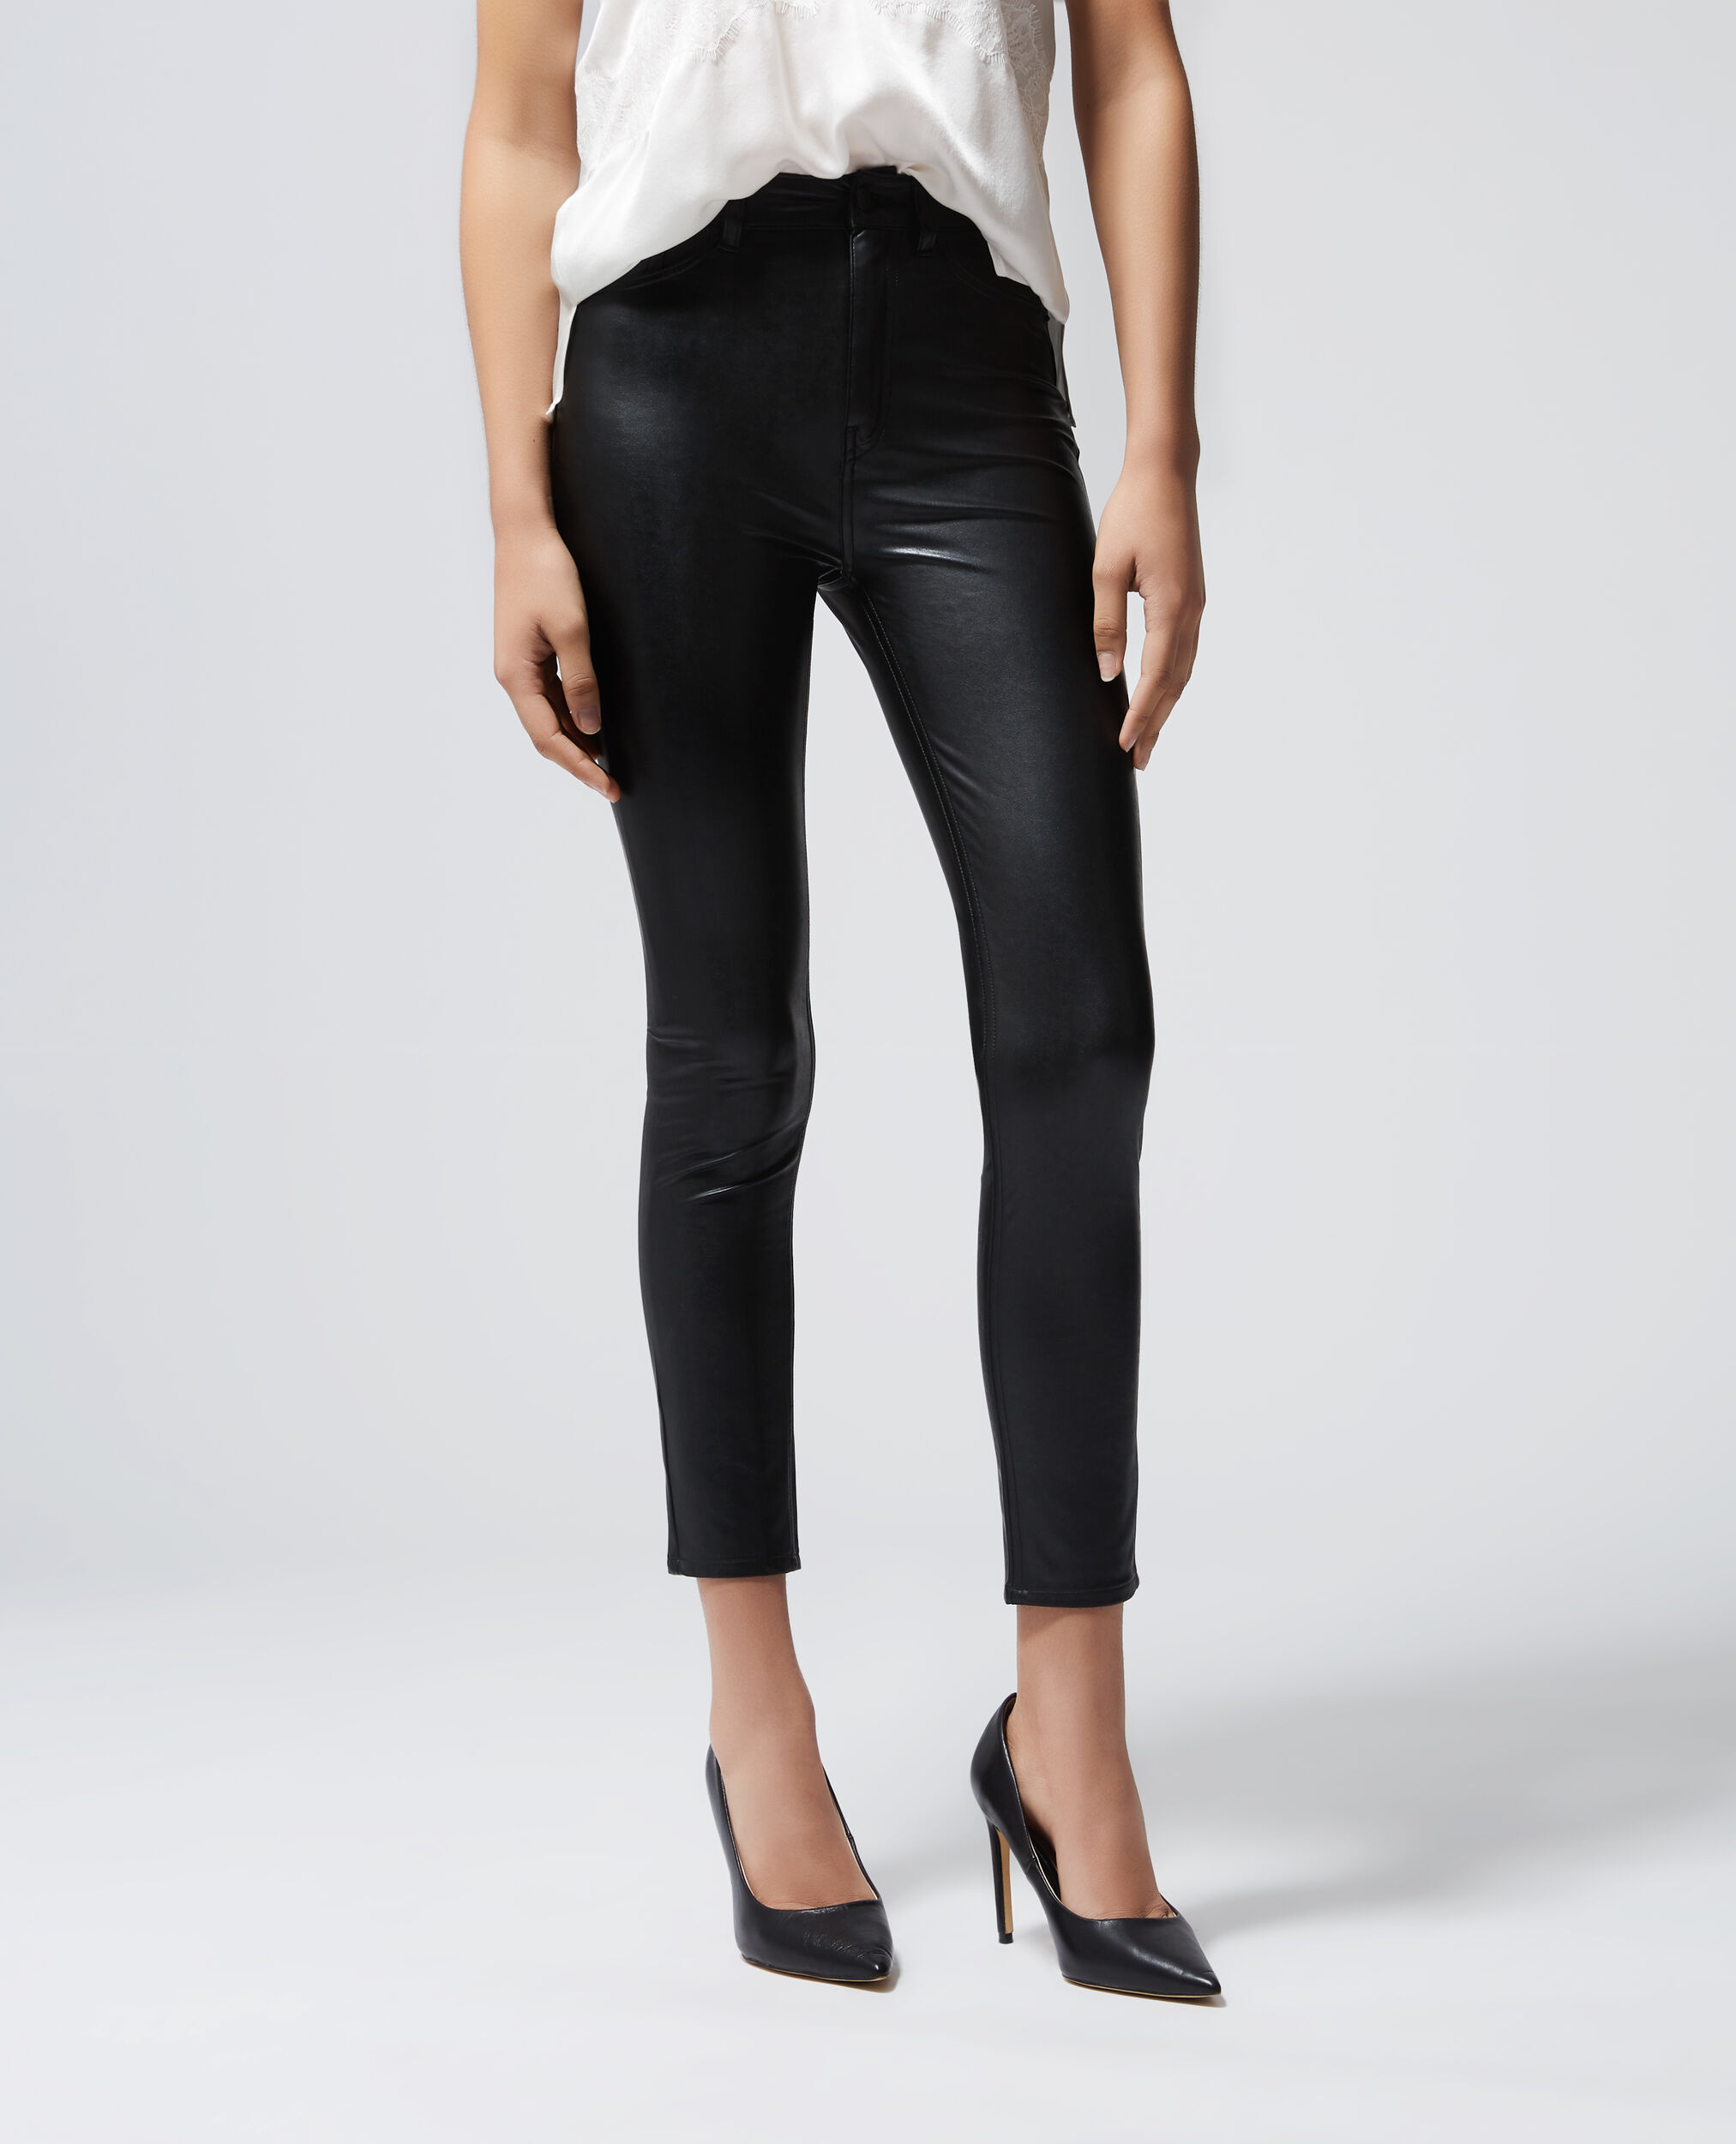 Pantalon noir ajusté style jean, BLACK, hi-res image number null